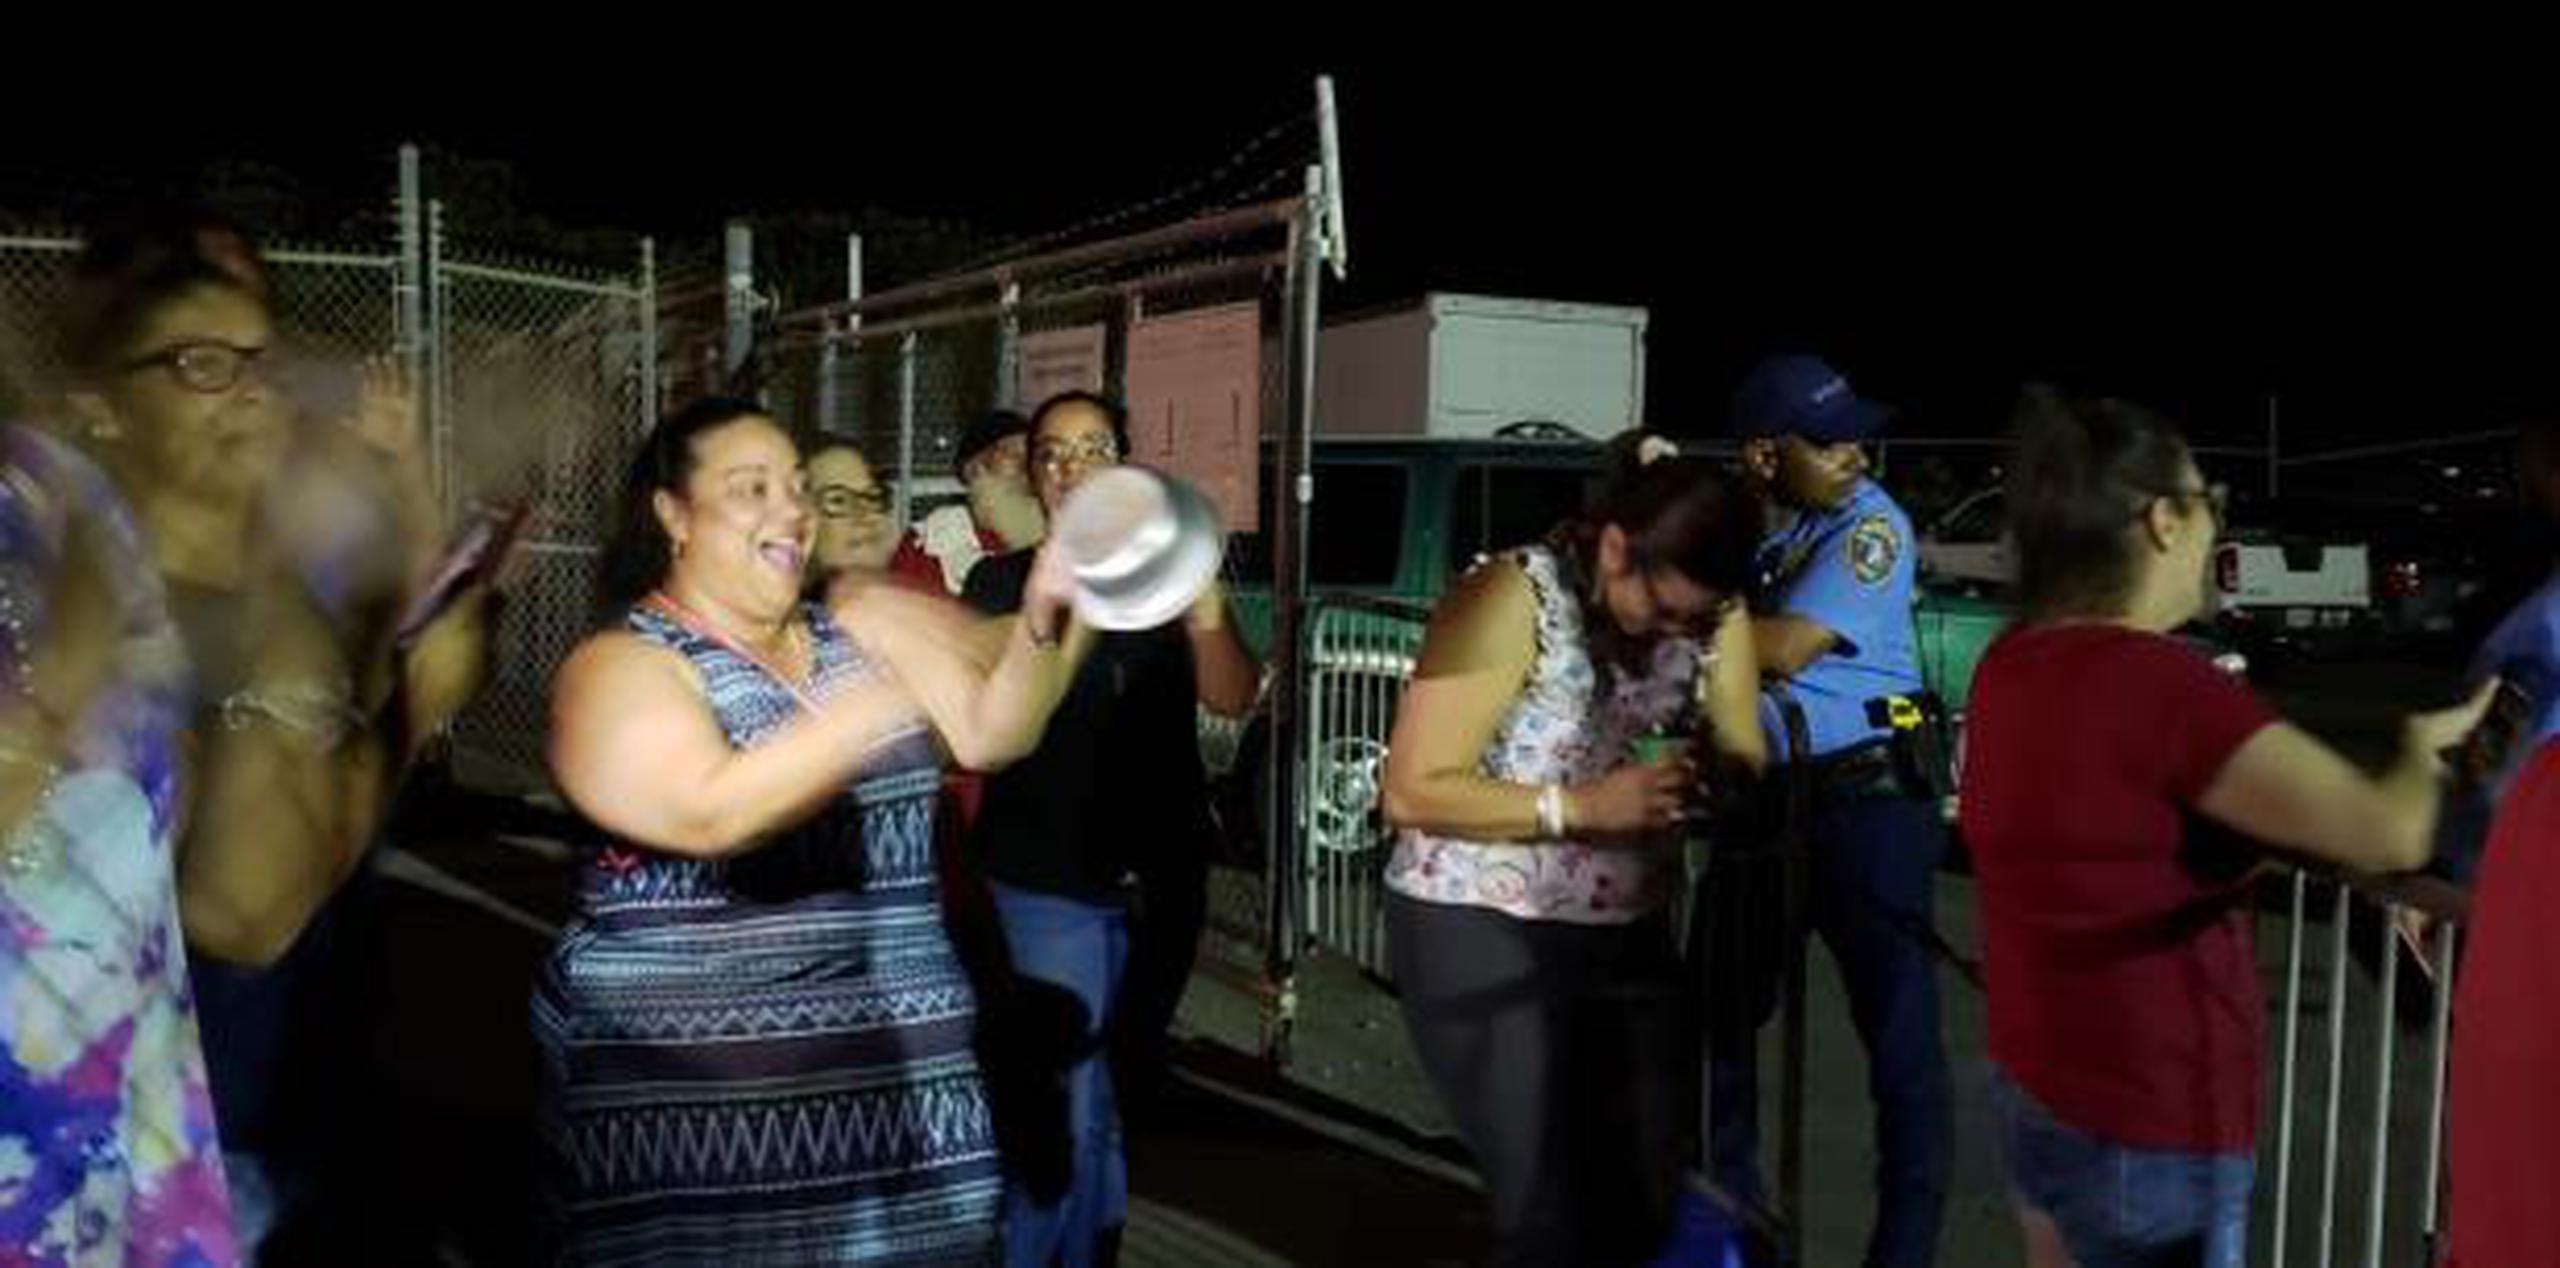 Las autoridades entendían que se había creado una "emergencia" con la protesta del lunes en Vieques. (archivo)